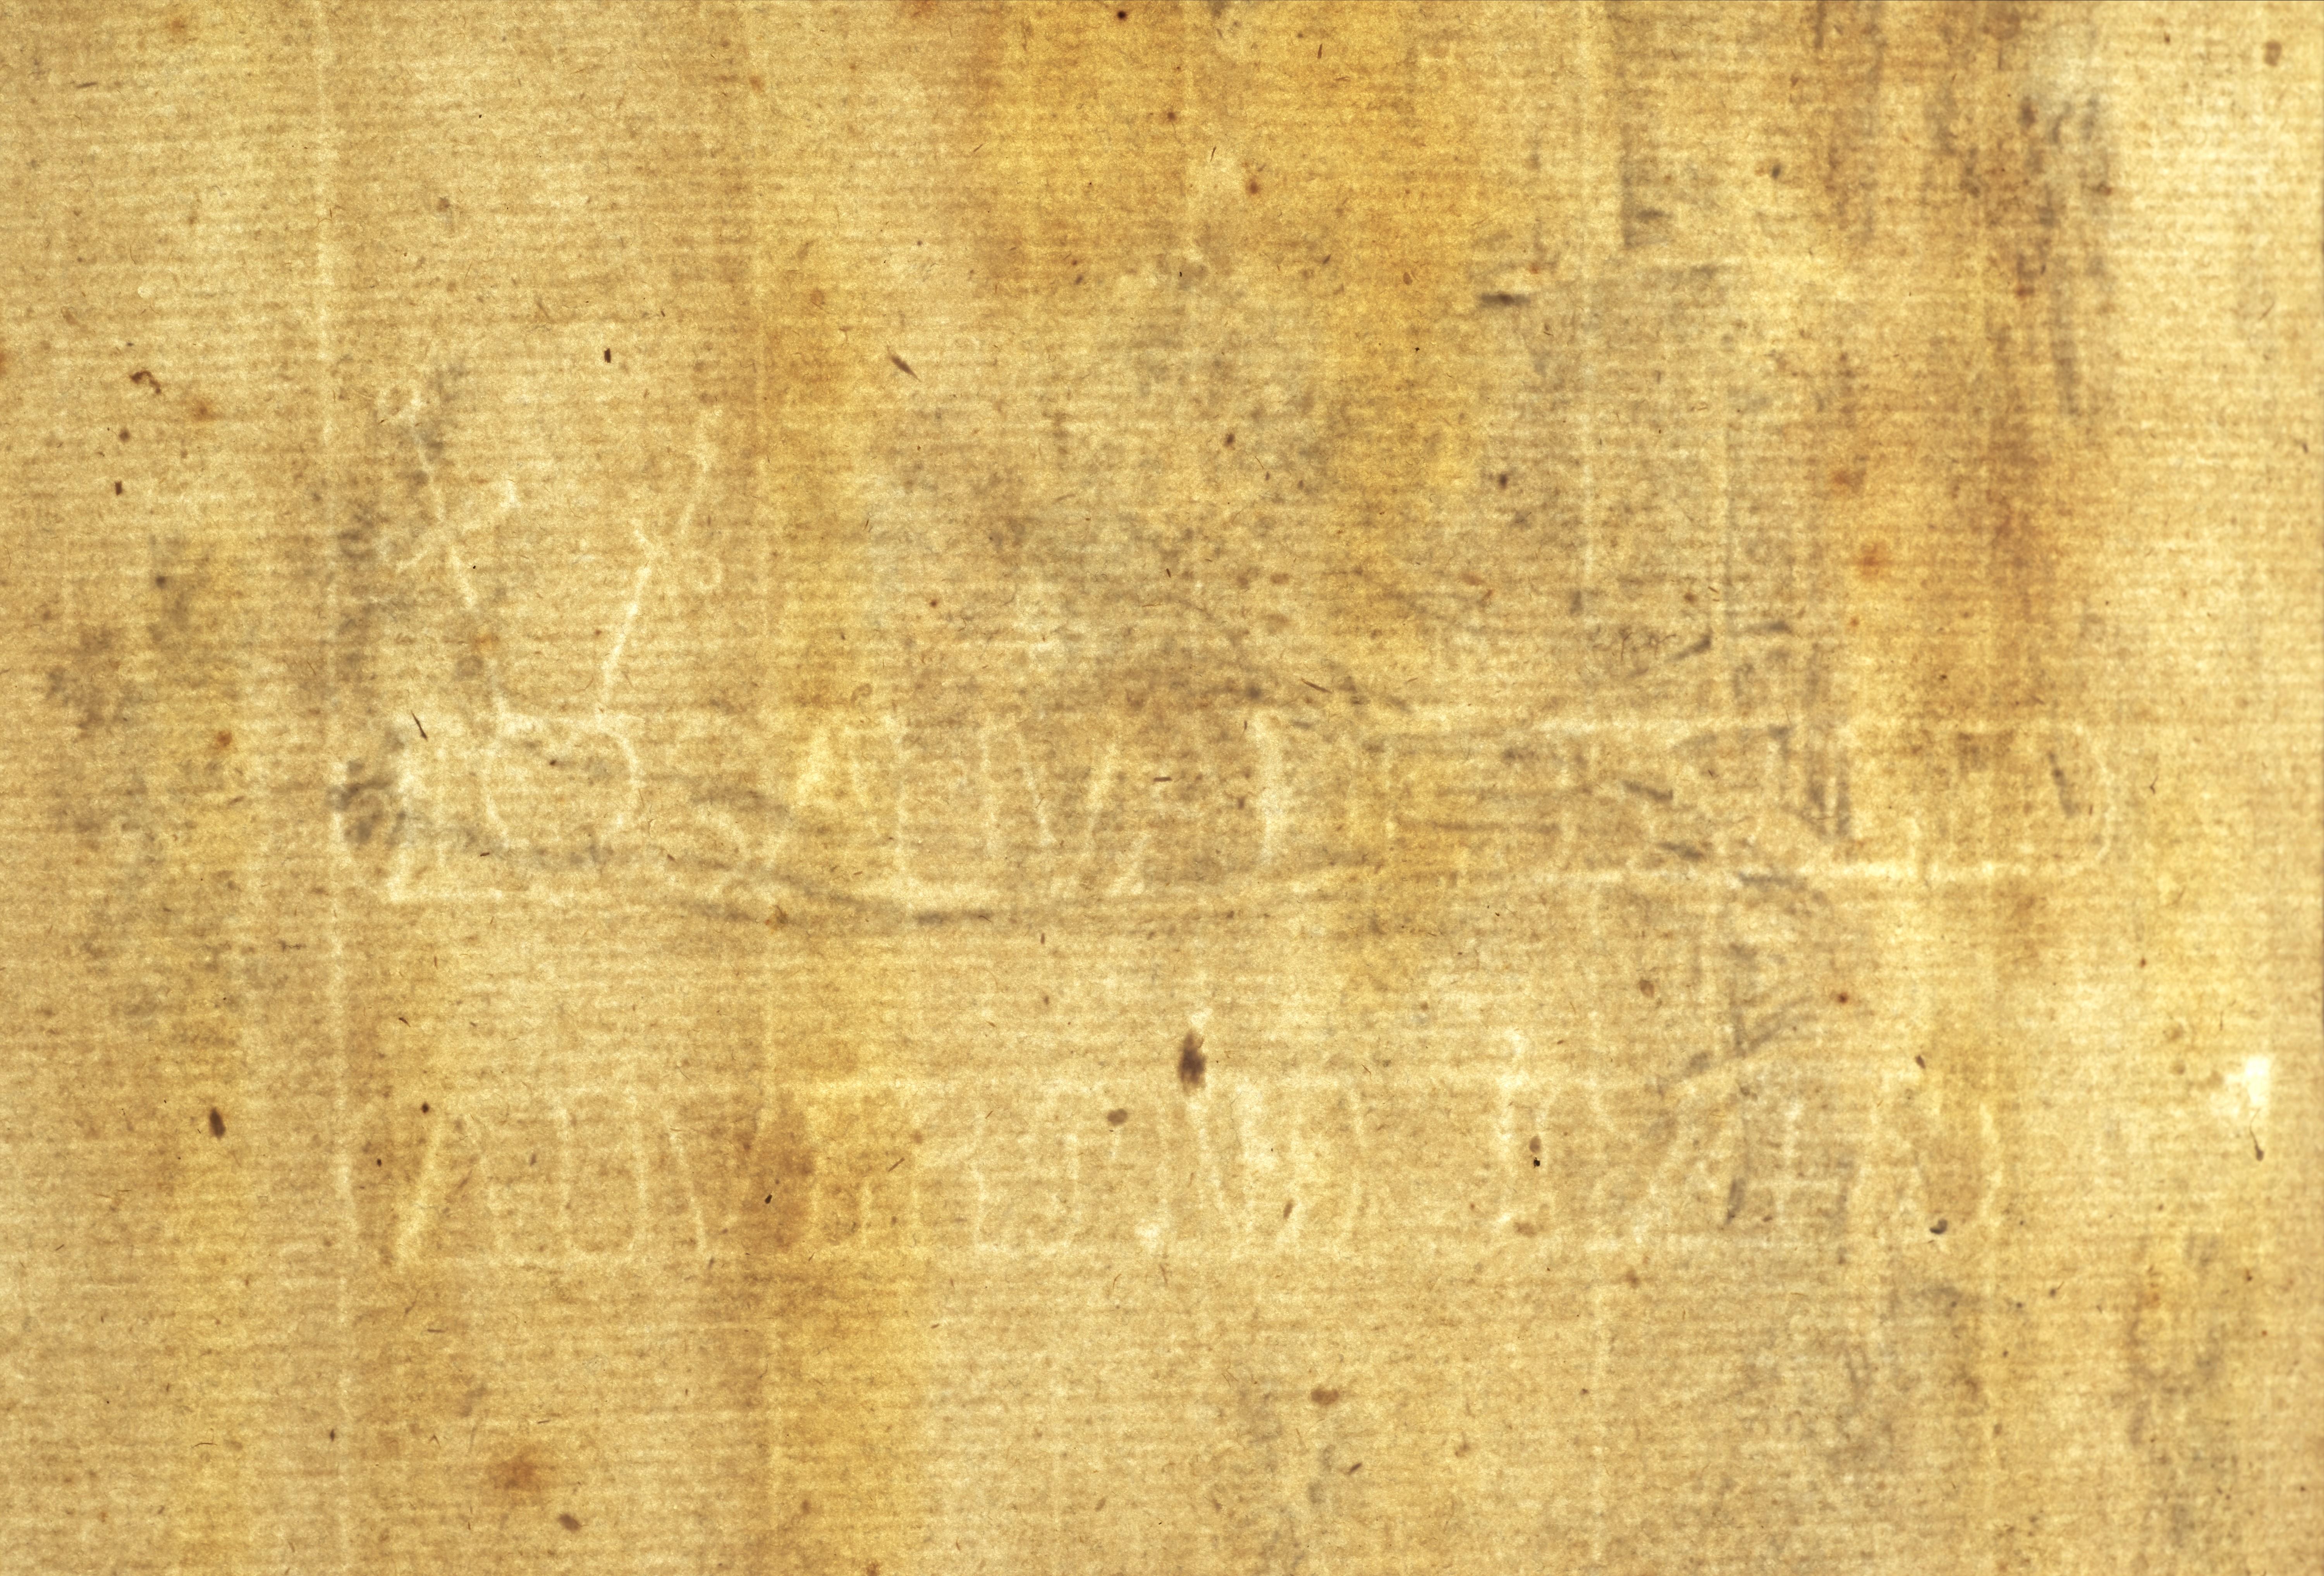 Provenienz: 
- •	Gekauft von Sicart in Lyon durch den Marquis de Chennevières (1820 - 1899) - Collection'S Chennevières (gestempelt unten links - Lugt 2072) 
- •	Bezeichnet auf der Rückseite des Passepartouts 